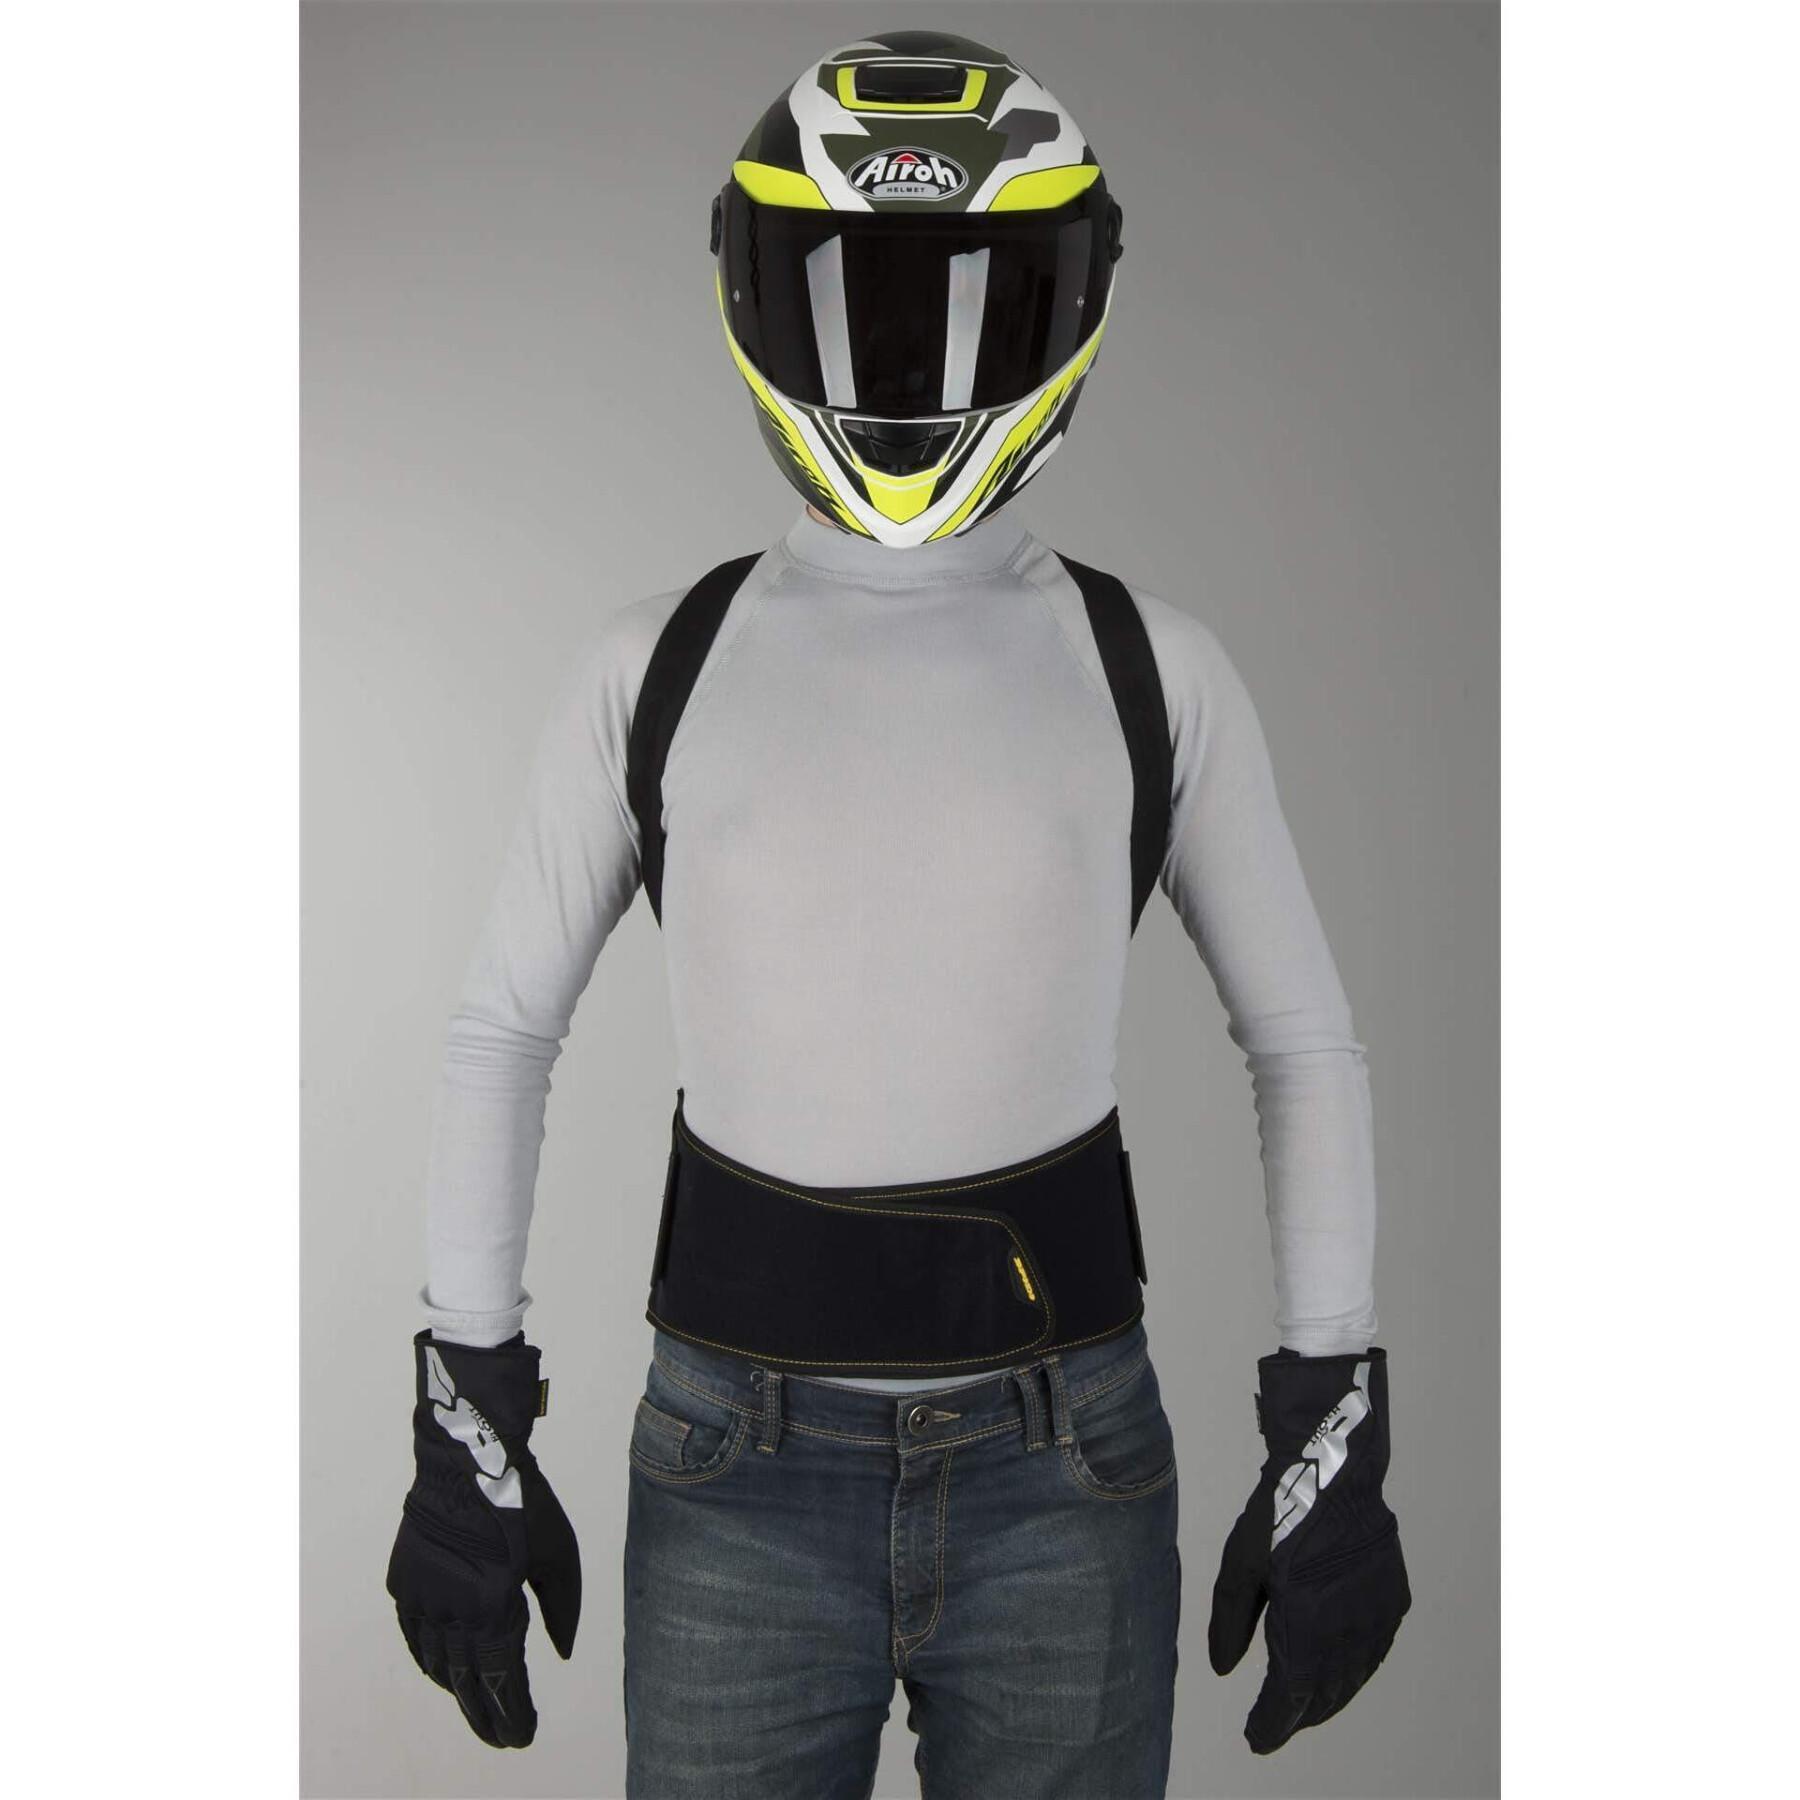 Motorrad-Rückenprotektor Spidi warrior 170-180